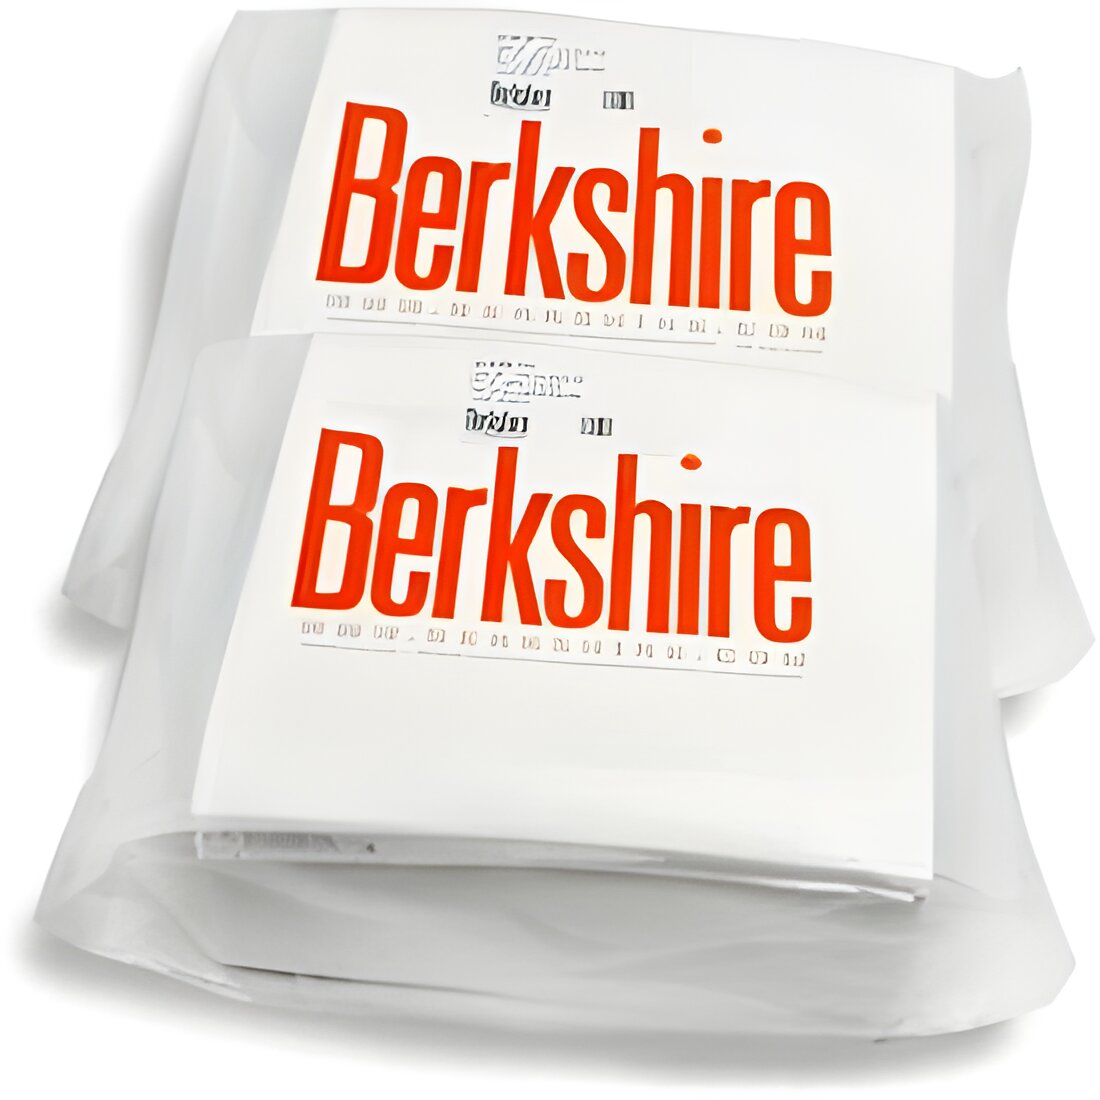 Free Berkshire Durx Wipes